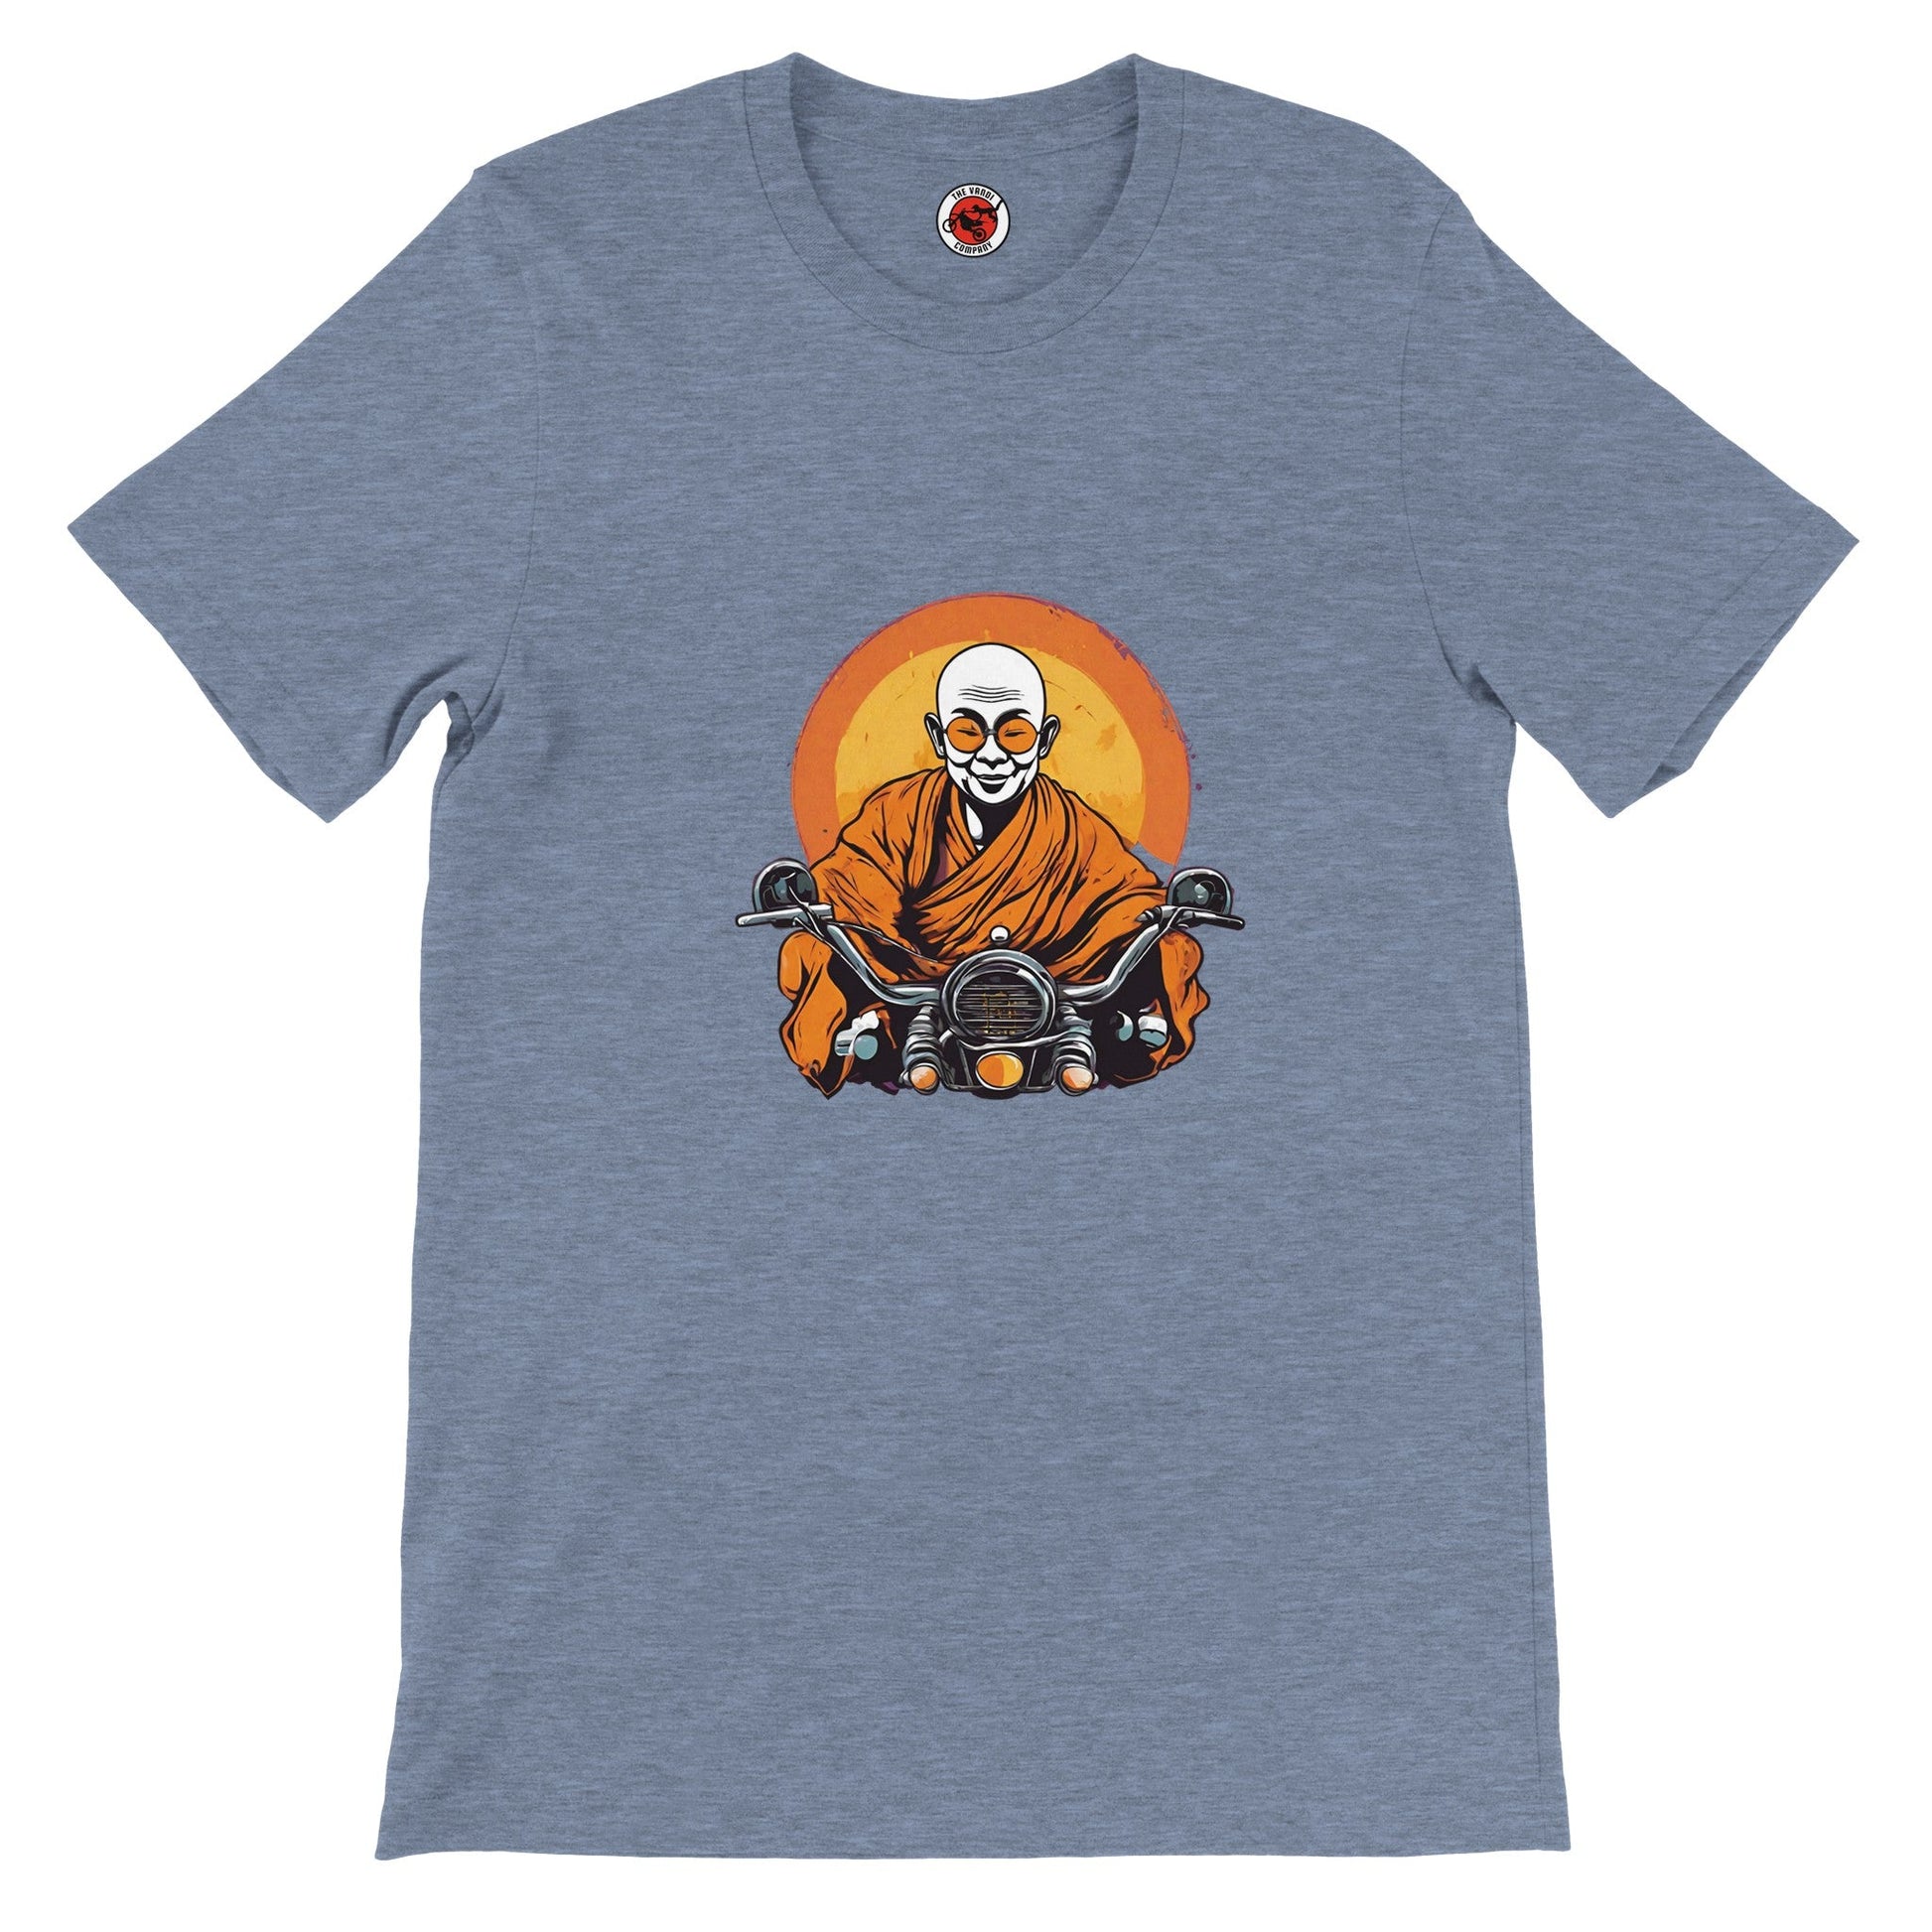 Men's Premium Crewneck T-shirt - Zen - The Vandi Company